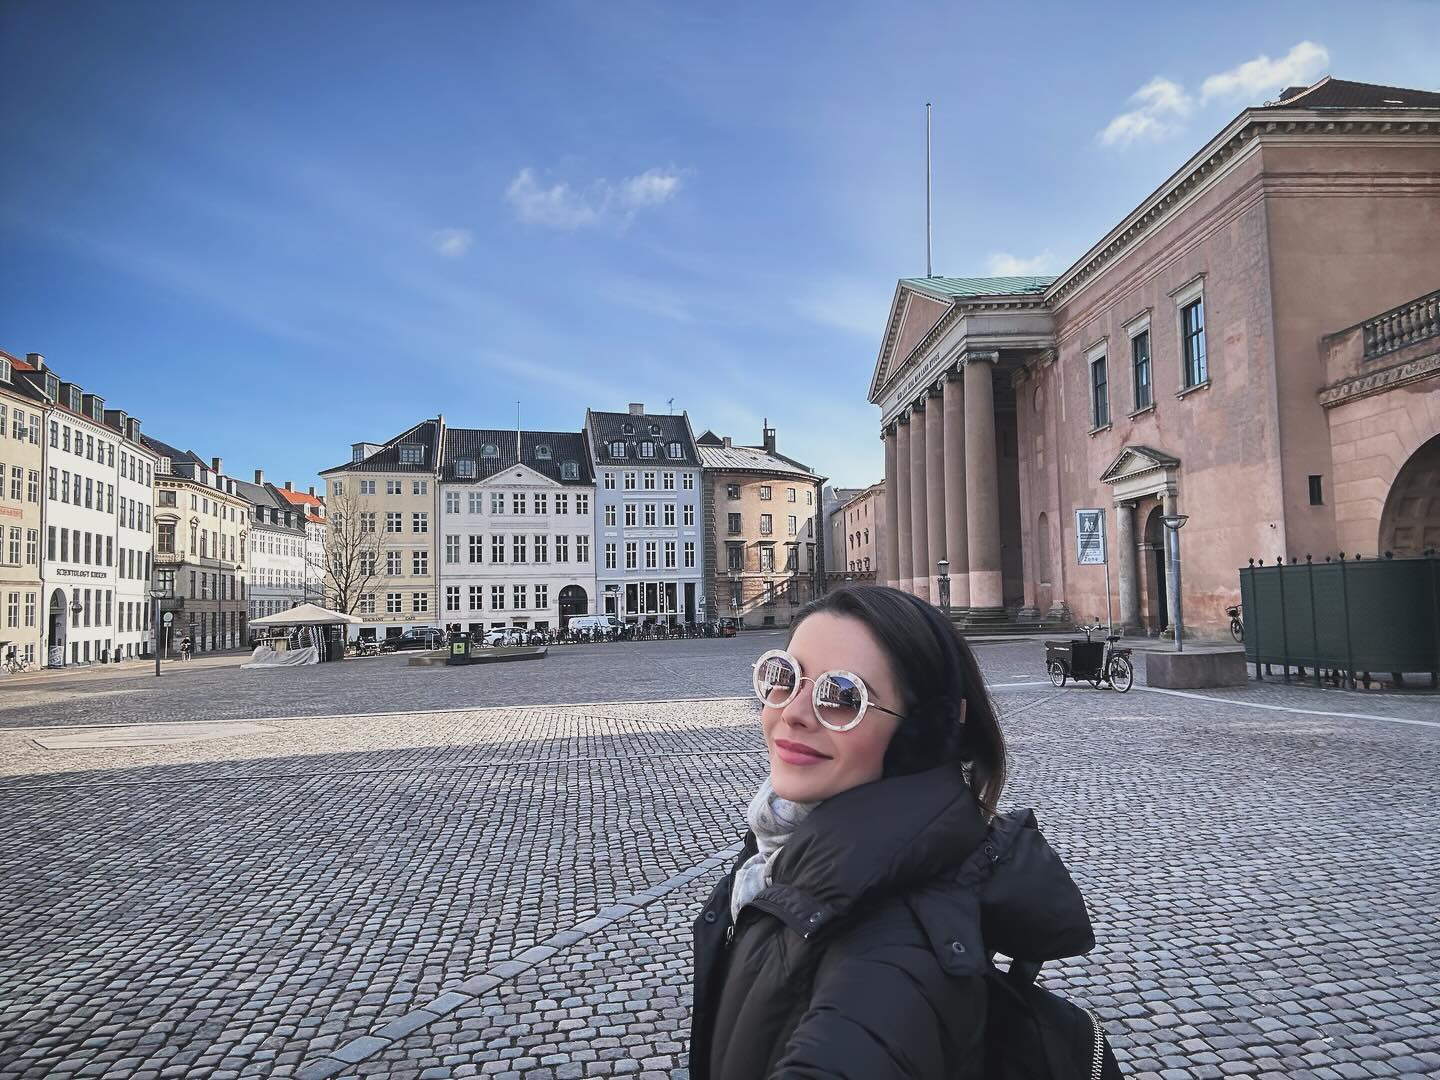 Cantora compartilhou uma publicação emocionada no Instagram narrando visita a país europeu